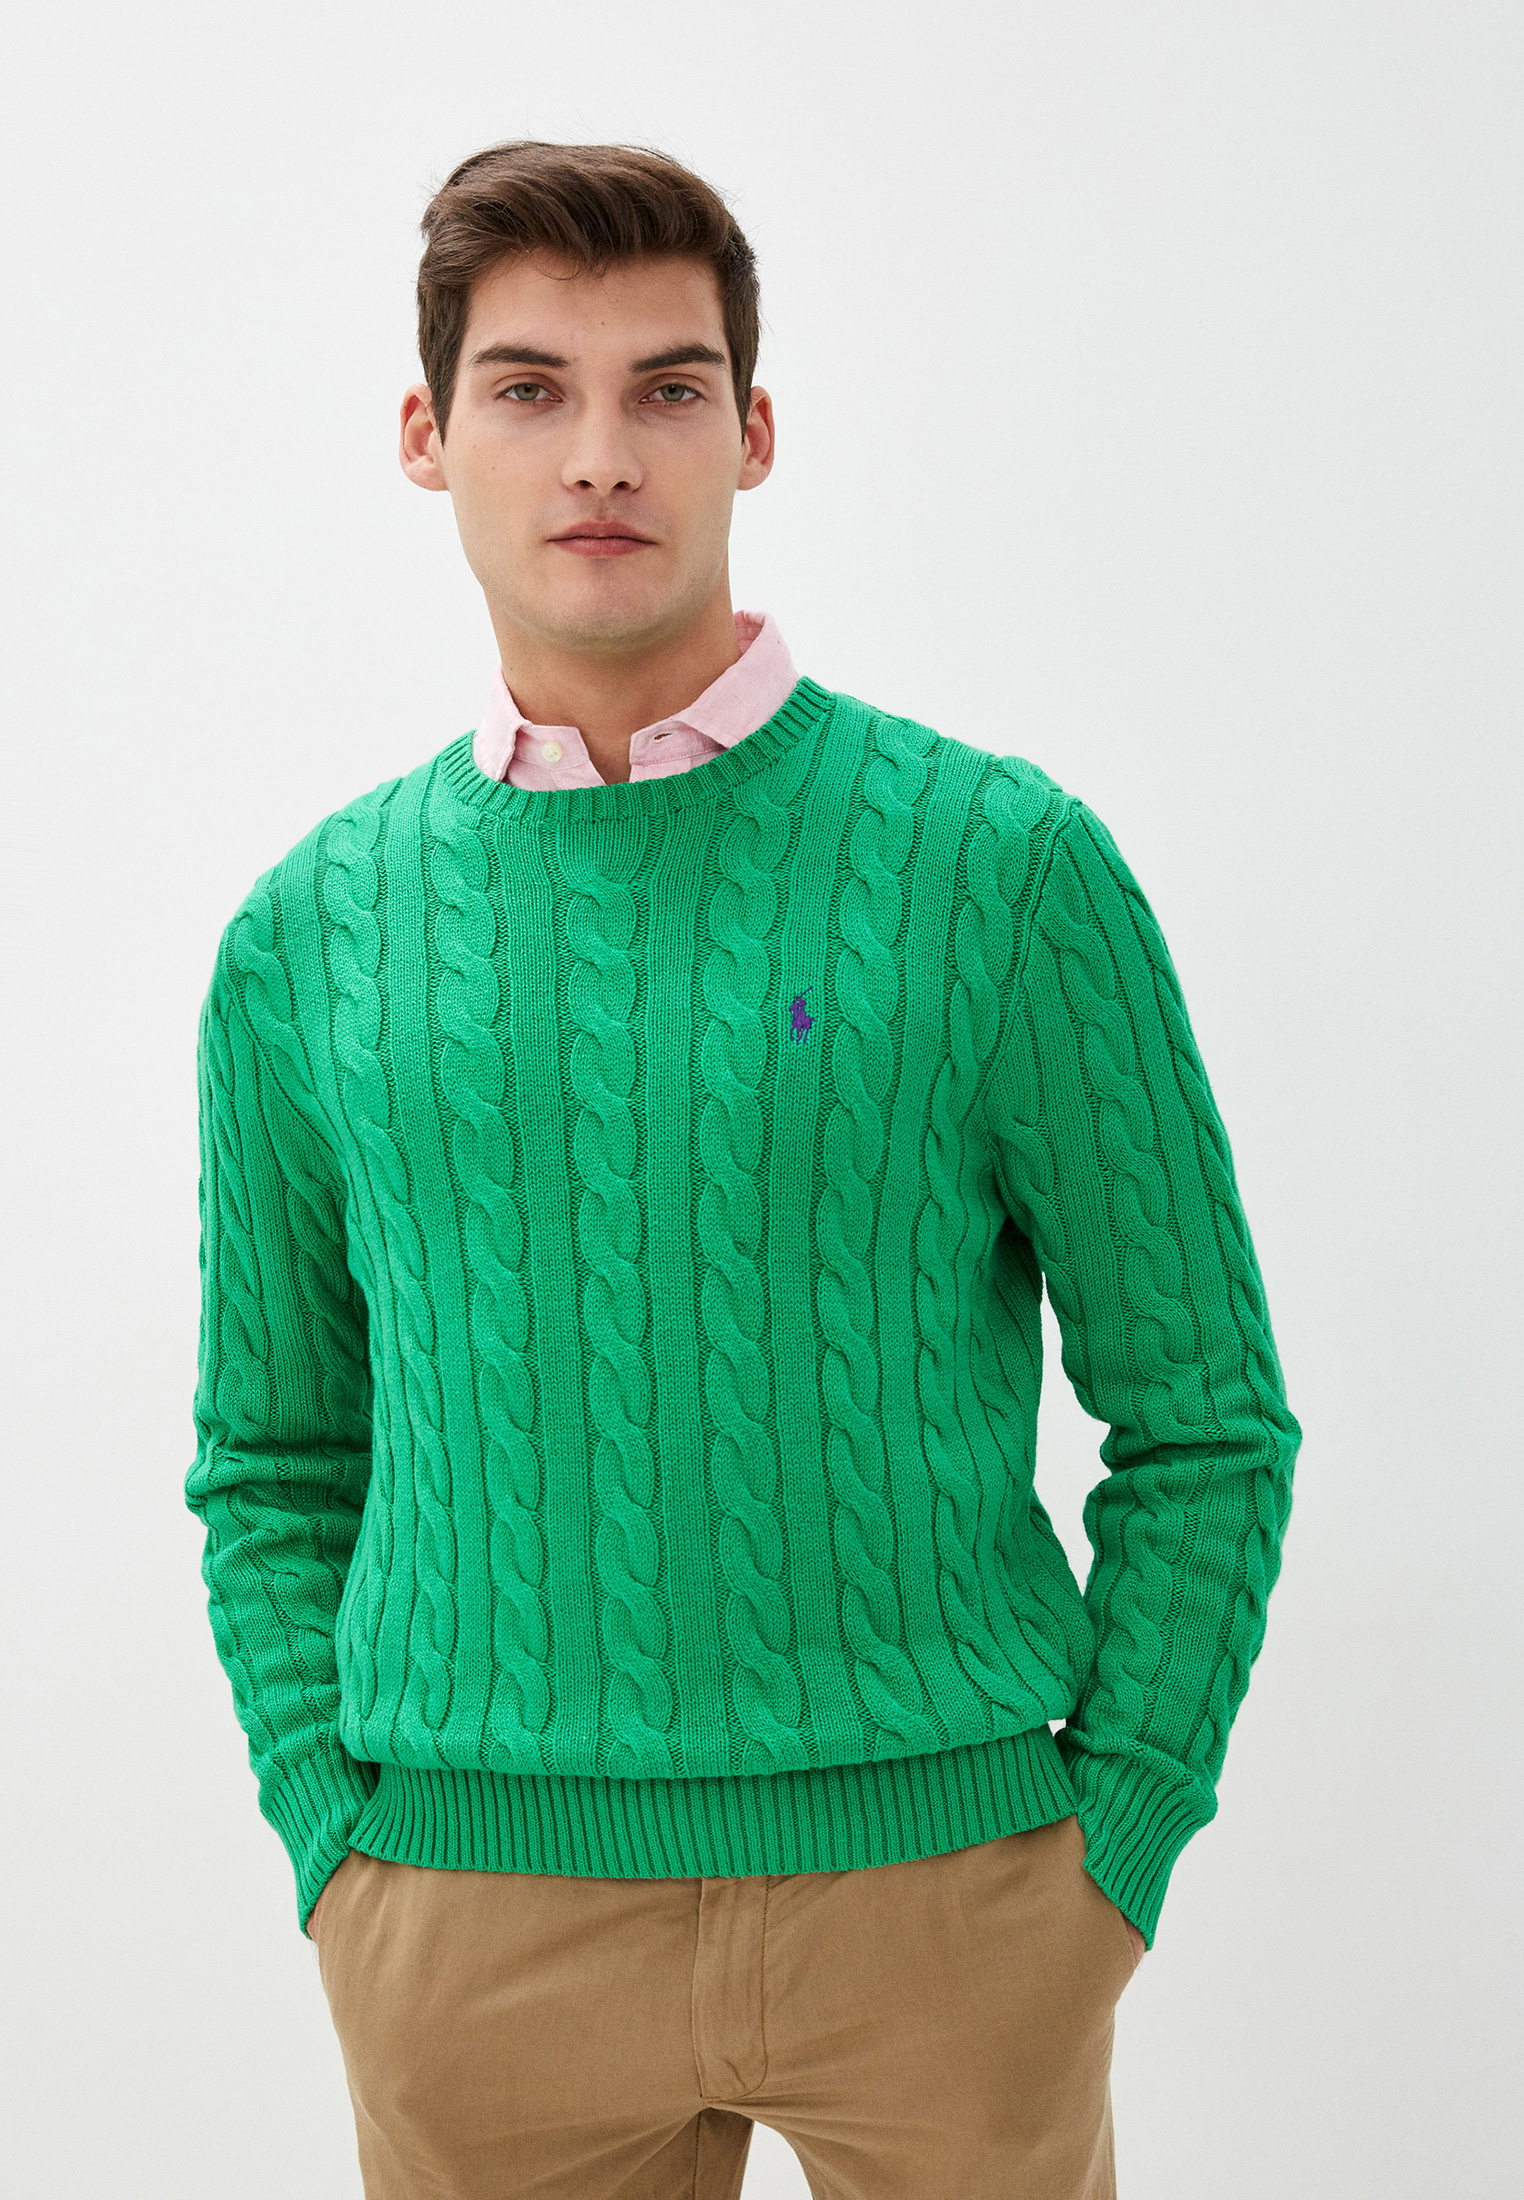 Зеленые свитеры мужские. Polo Ralph Lauren свитер зеленый. Джемпер Polo Ralph Lauren мужской зеленый. Джемпер Polo Ralph Lauren зелёный. Свитер поло Ральф лаурен мужской зеленый.